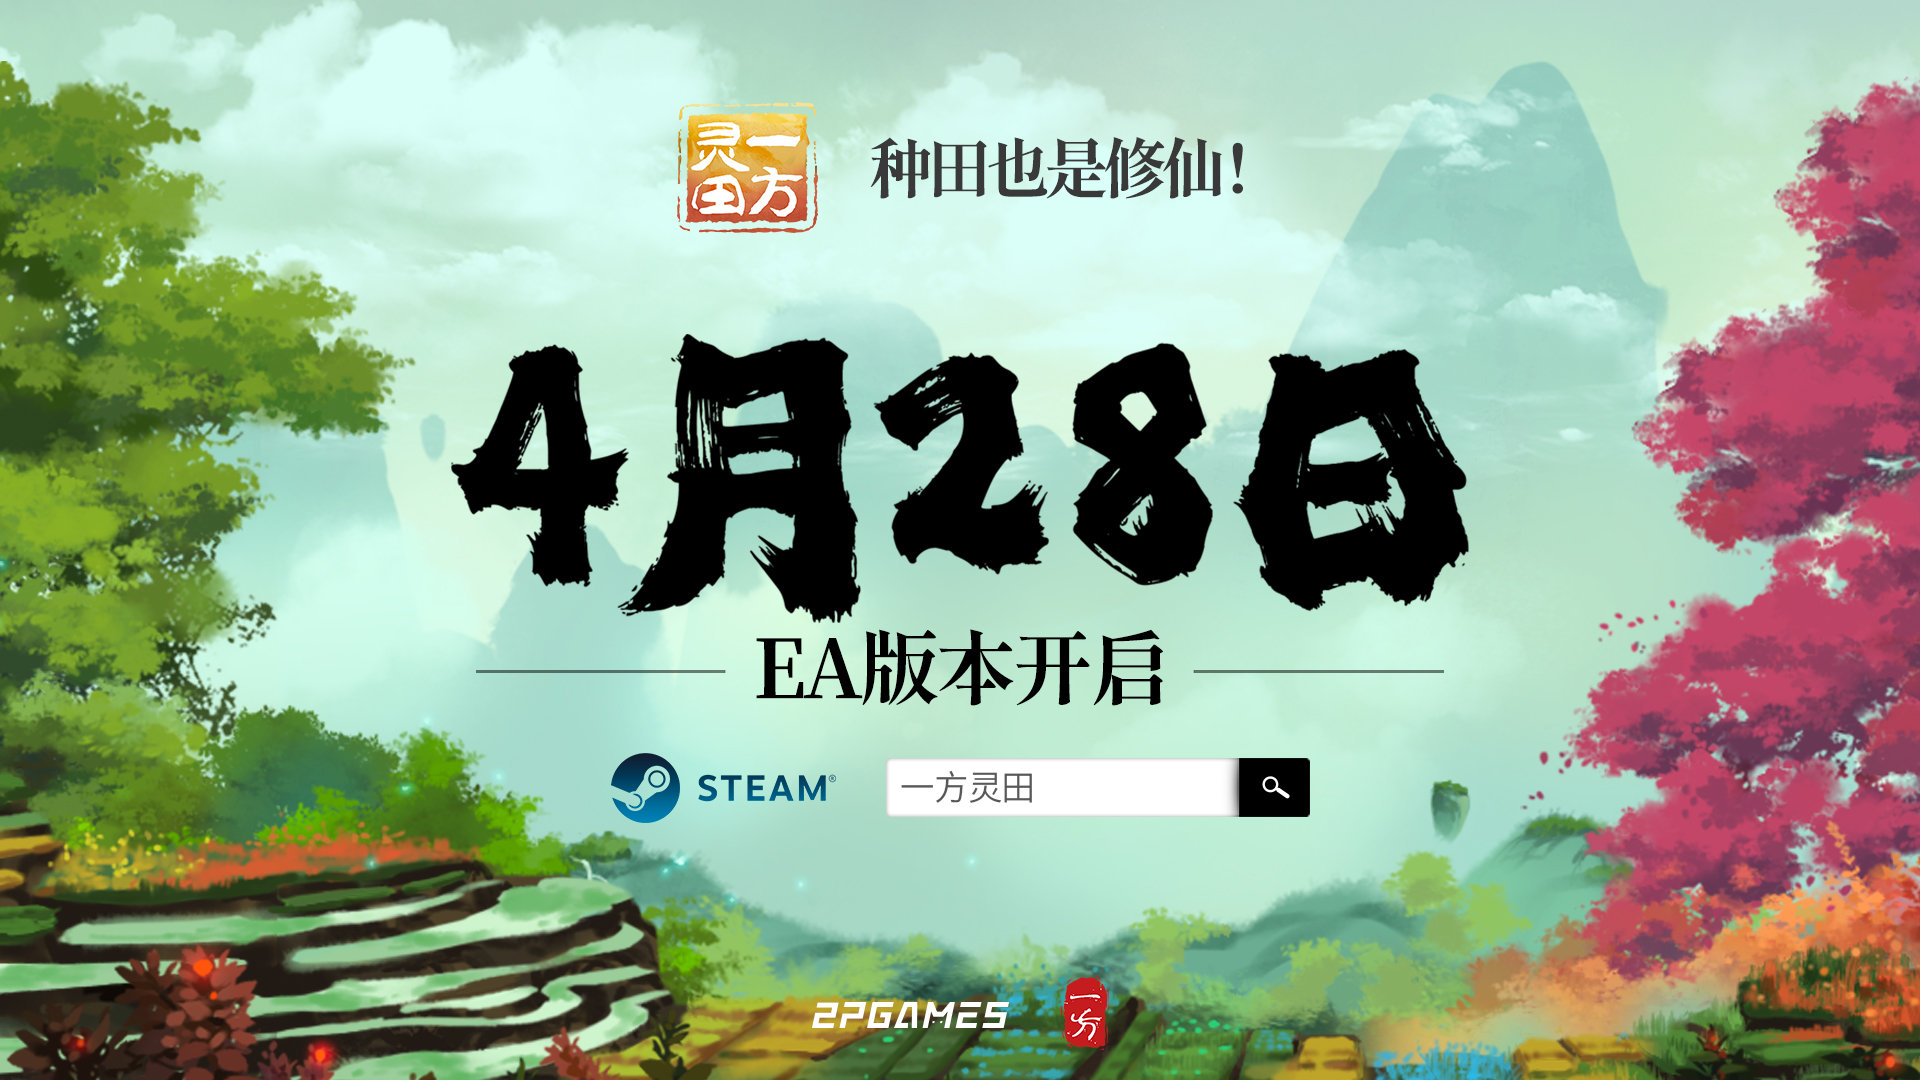 建仙种田游戏《1圆灵田》4月28日EA支卖 支持简体中文